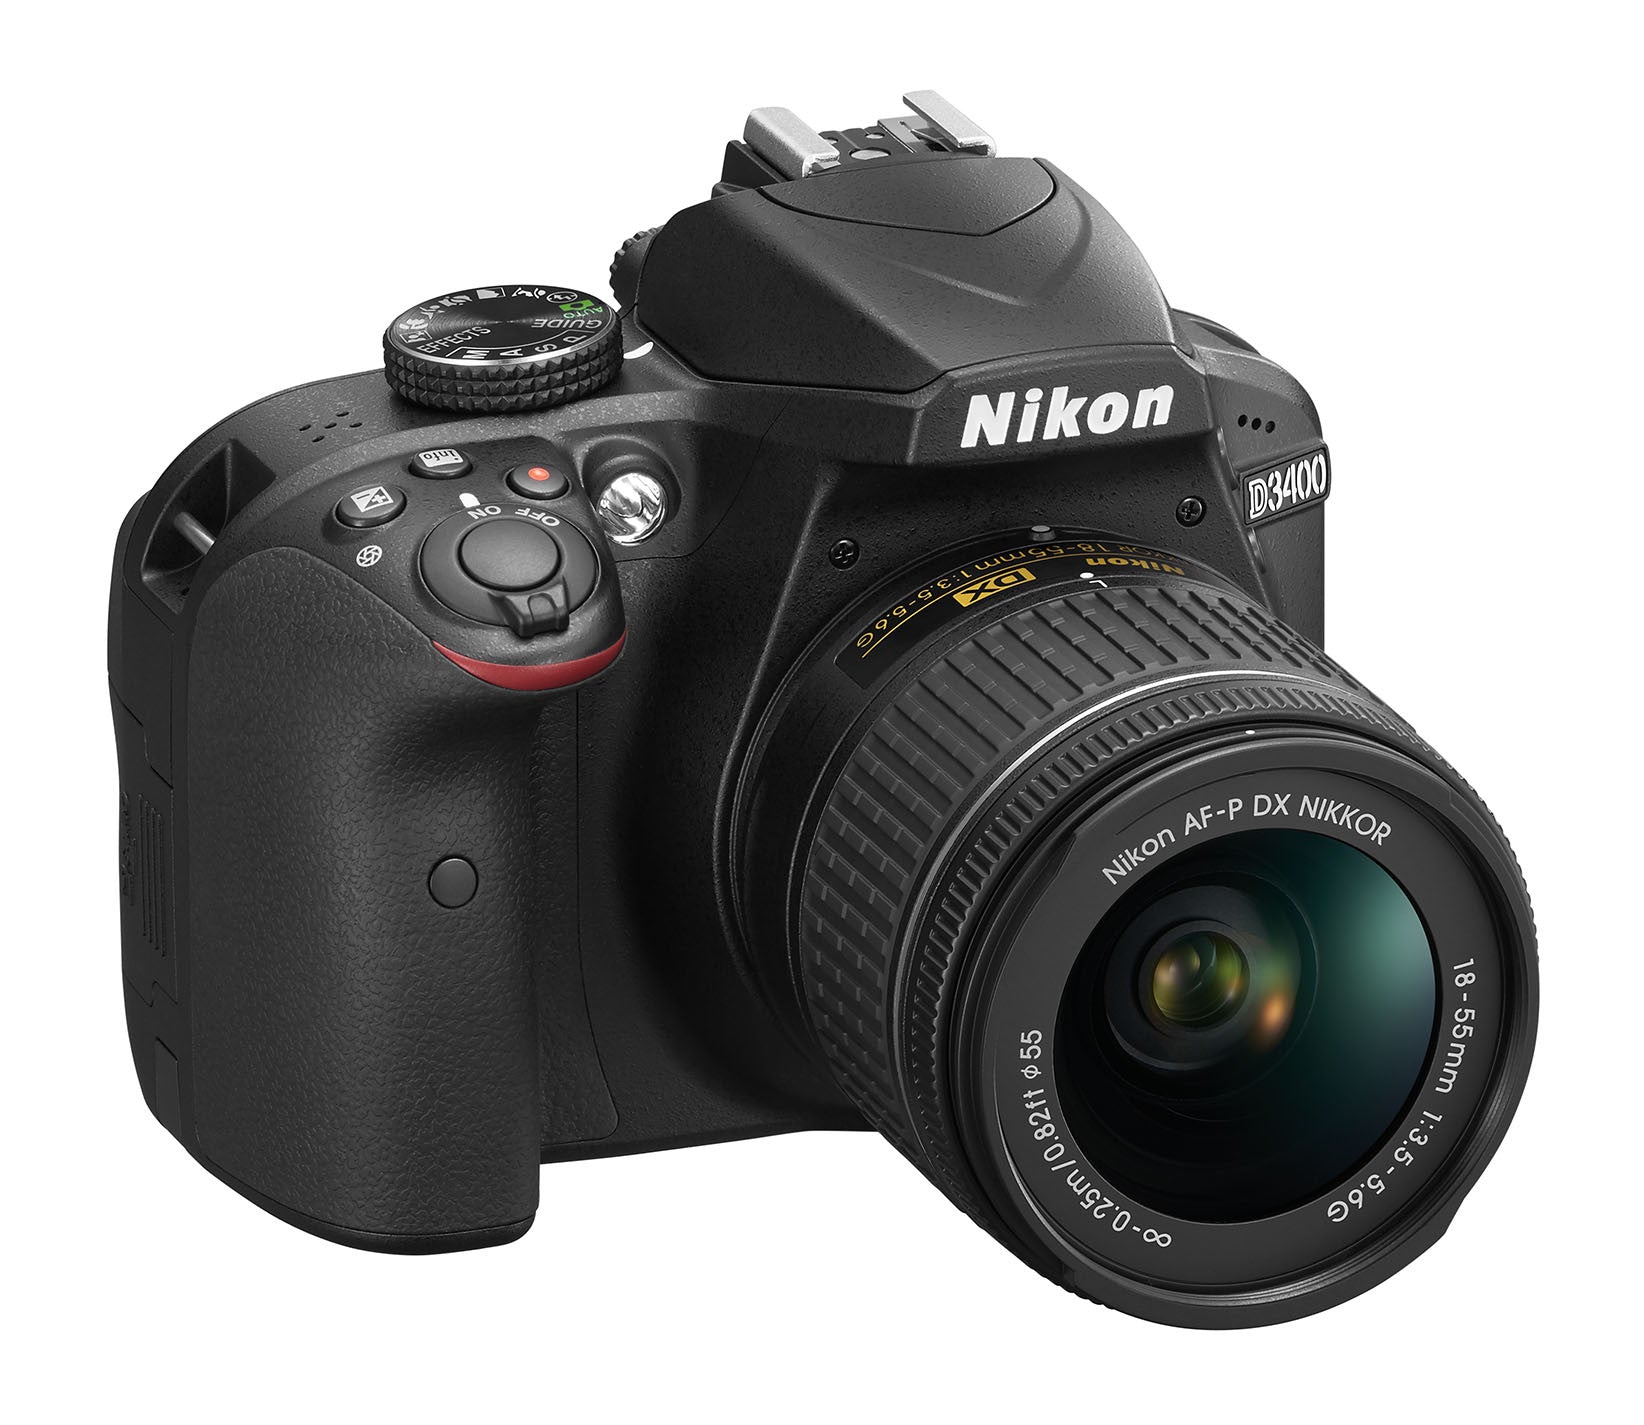 Nikon D3400 DX-format Digital SLR Kit w/ 18-55mm DX G VR Zoom Lens Black, camera dslr cameras, Nikon - Pictureline  - 2